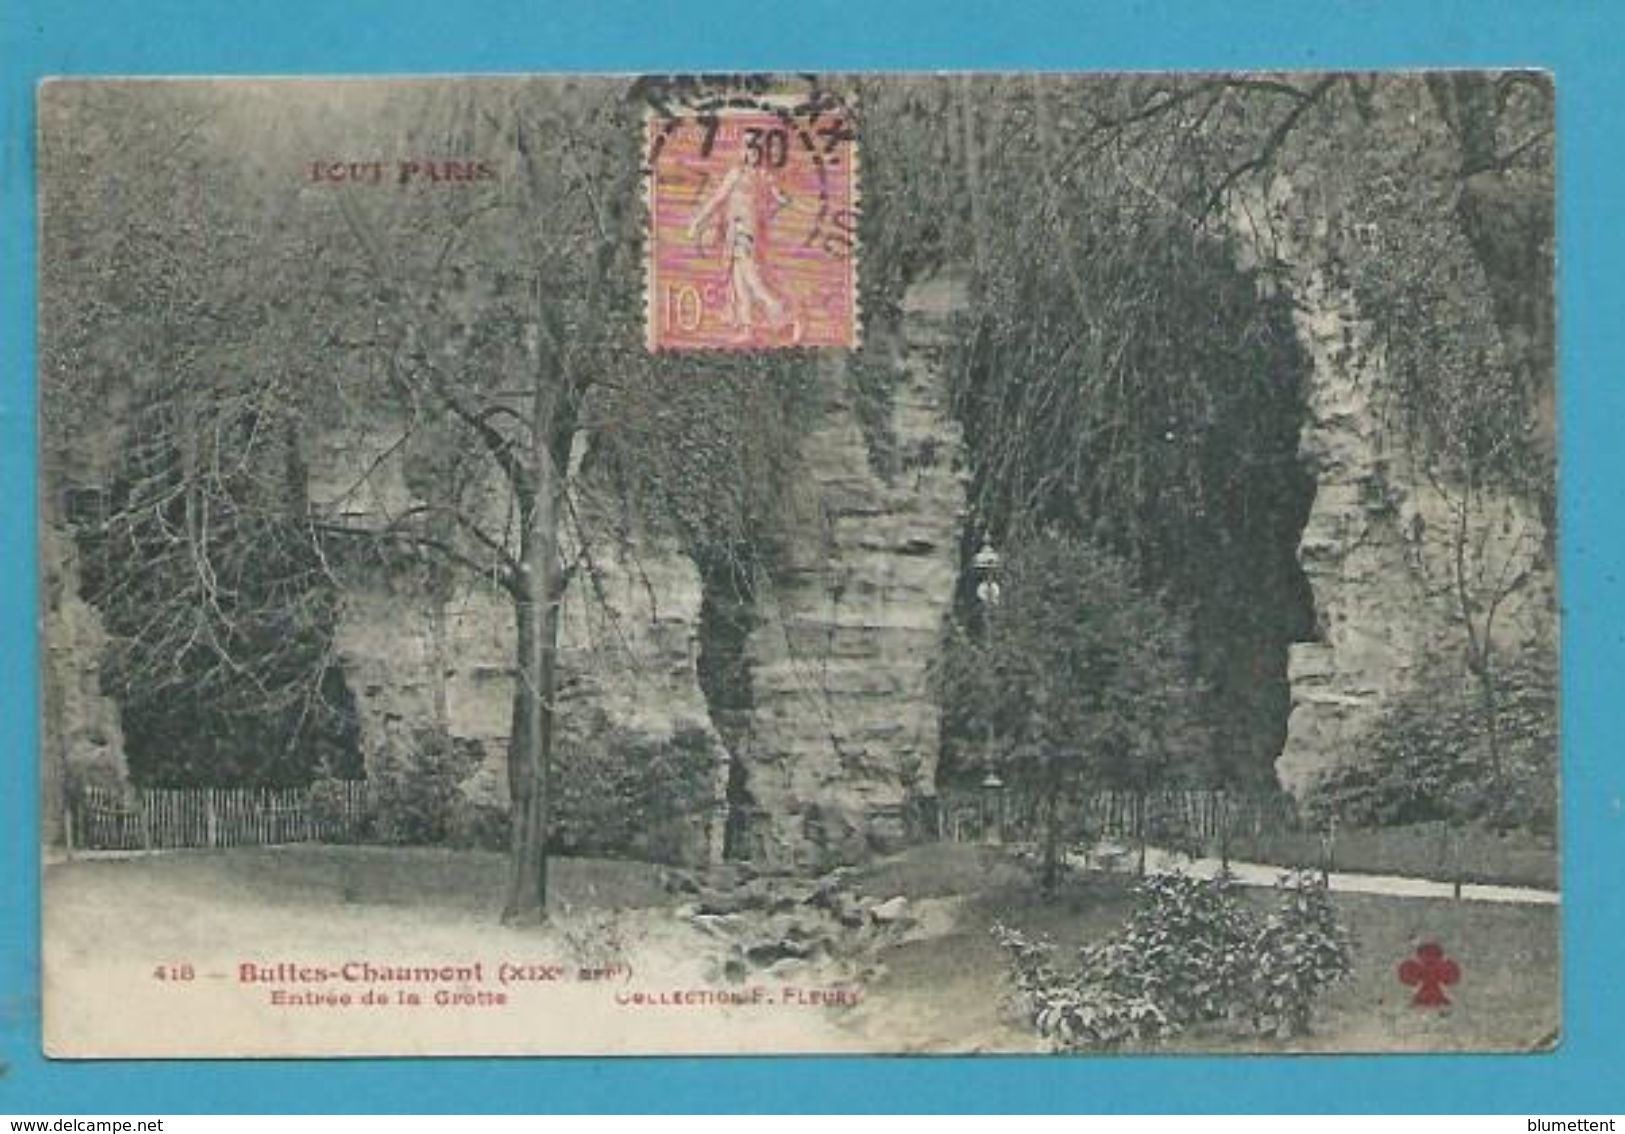 CPA TOUT PARIS 418 - Buttes Chaumont Entrée De La Grotte (XIXème Arrt.) Ed. FLEURY - District 19